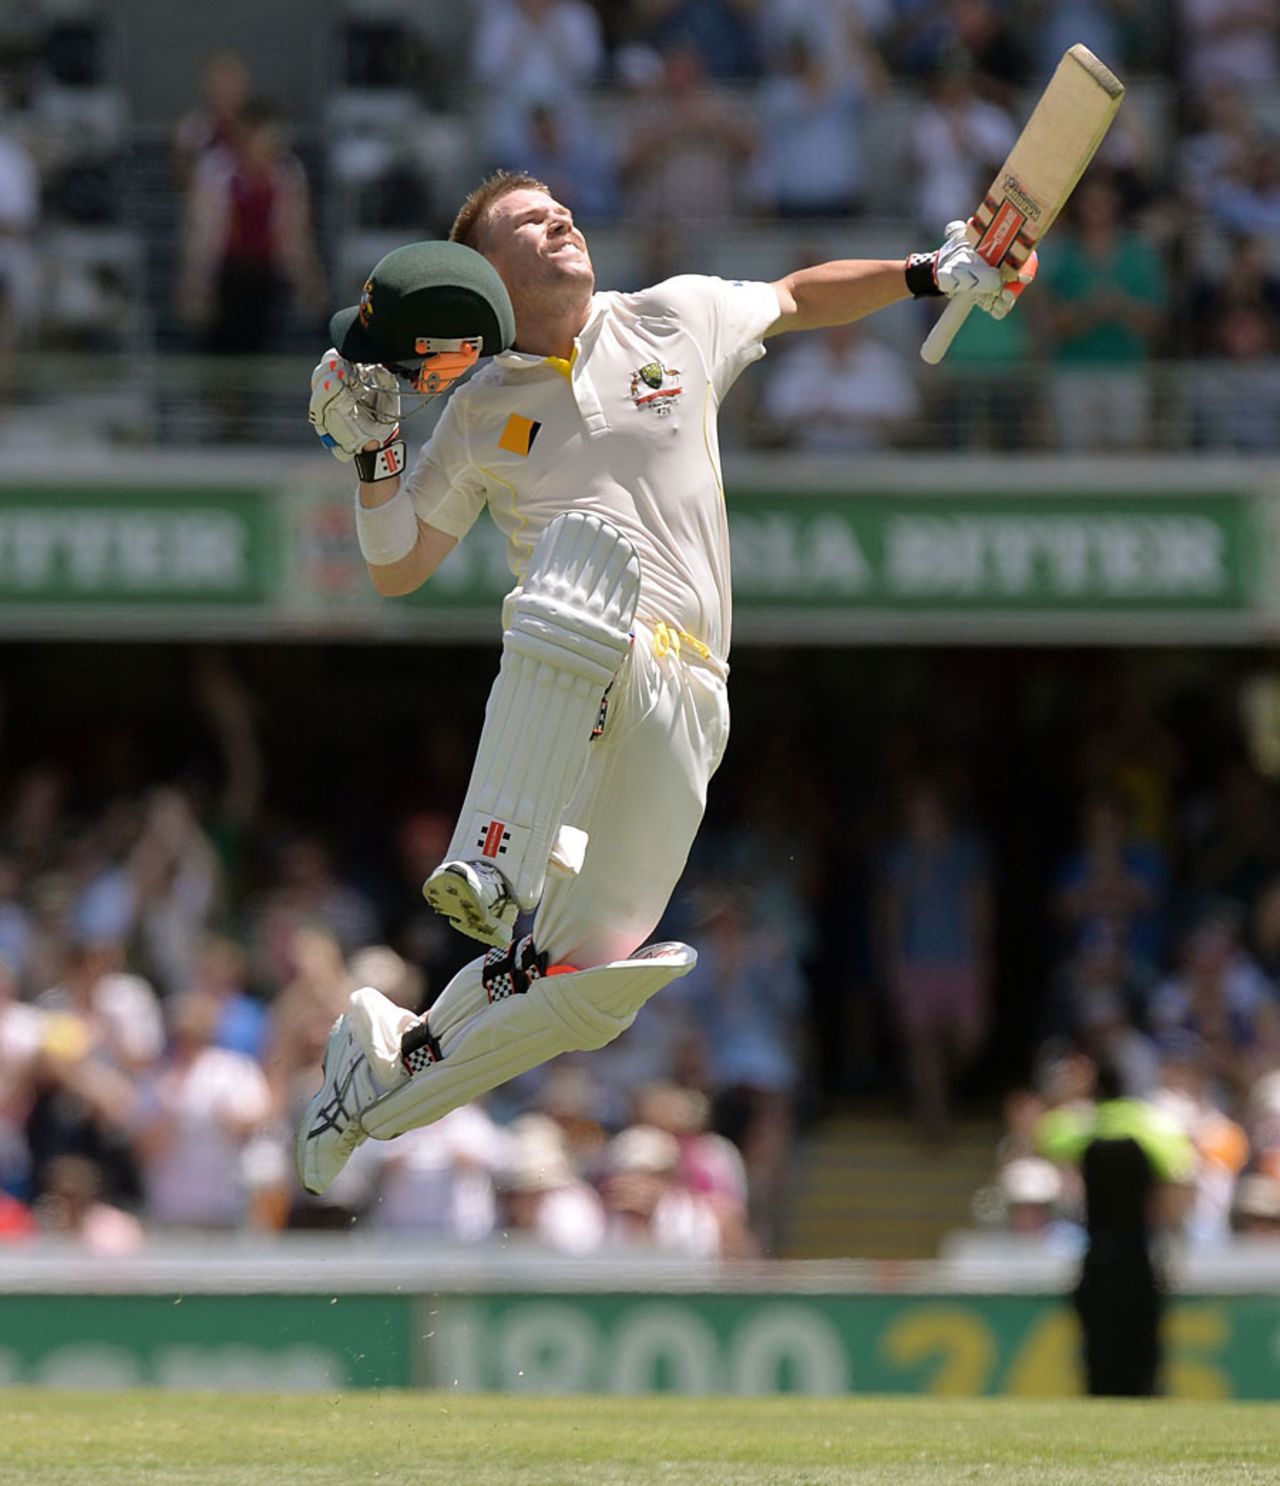 Jumping for joy: David Warner completes his first Ashes hundred, Australia v England, 1st Test, Brisbane, 3rd day, November 23, 2013